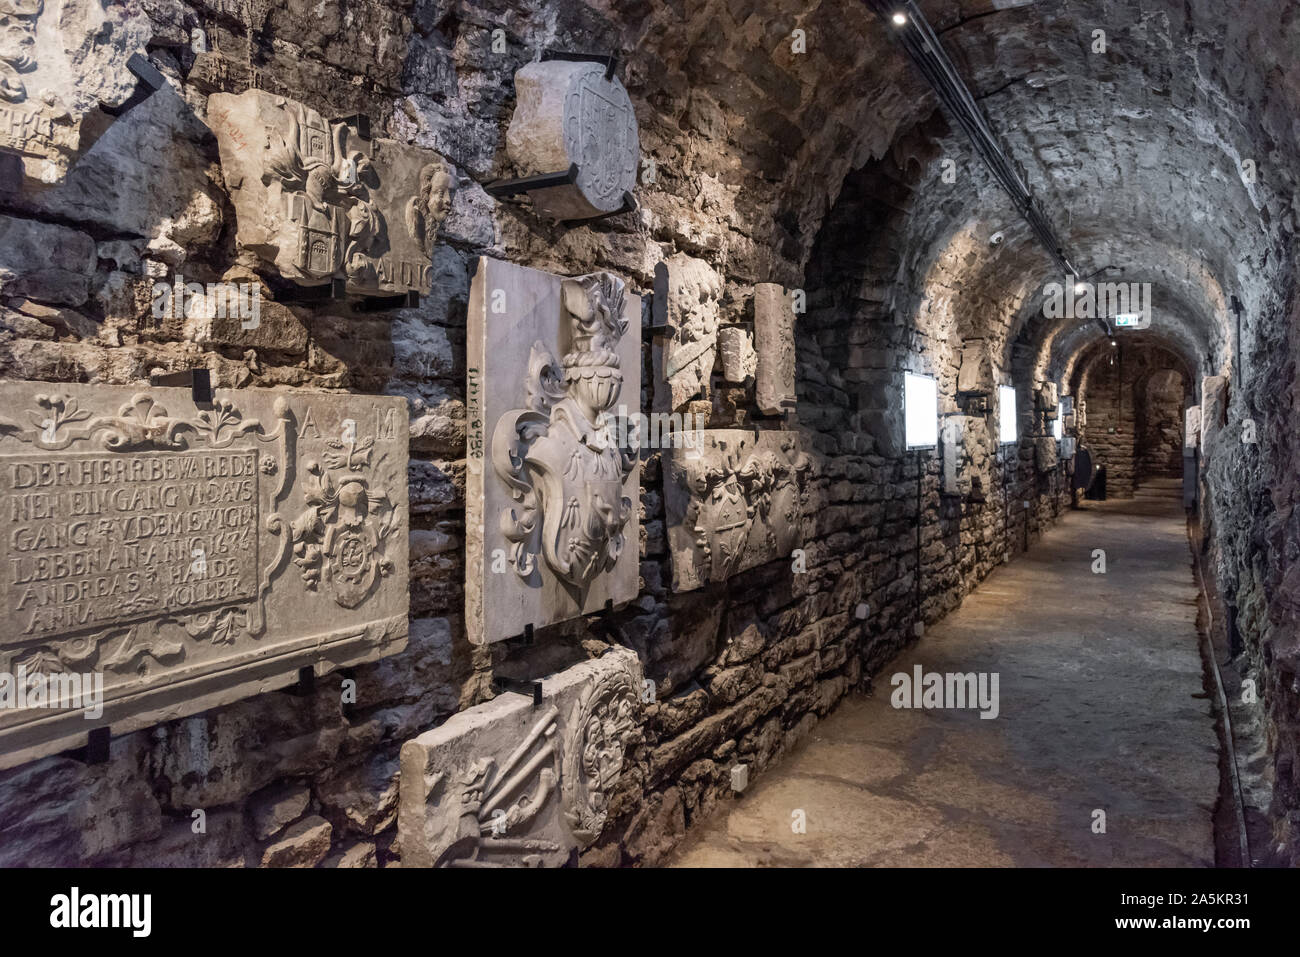 Musée pierre sculptée, passages et tunnels Bastion, Tallinn, Estonie Banque D'Images